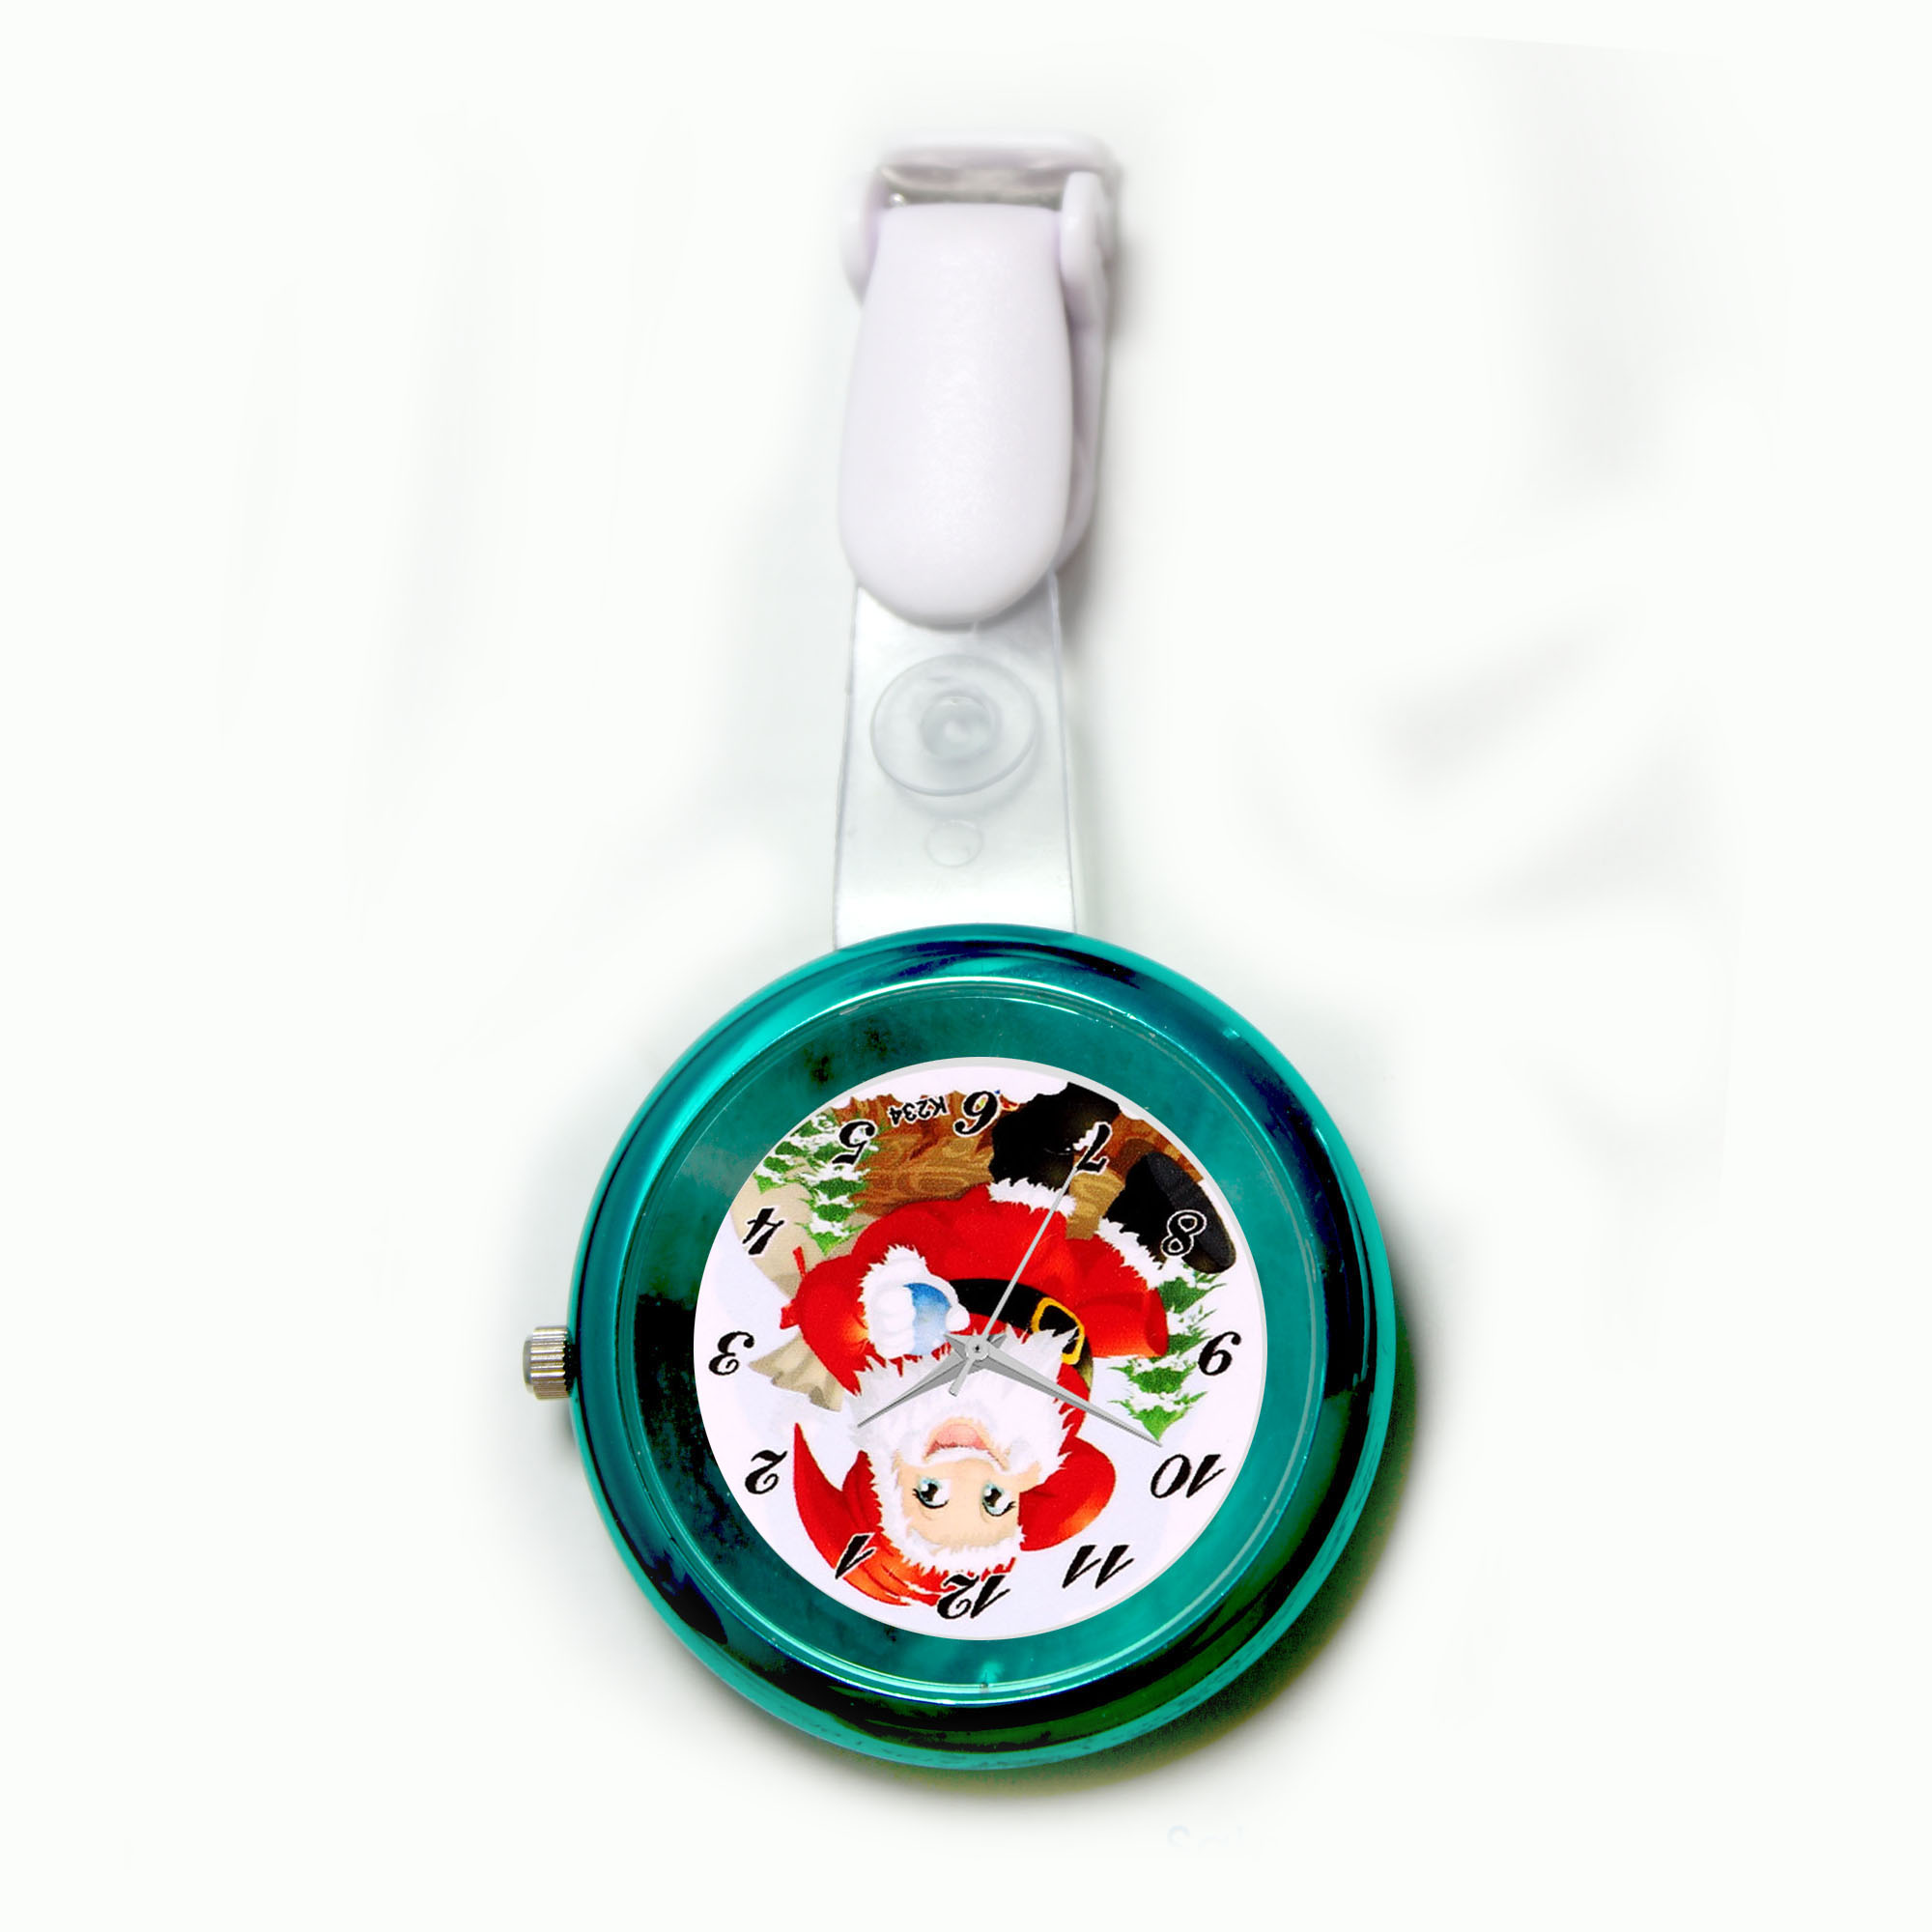  Colored Nurse Clock NS2103 - Santa nurse watch